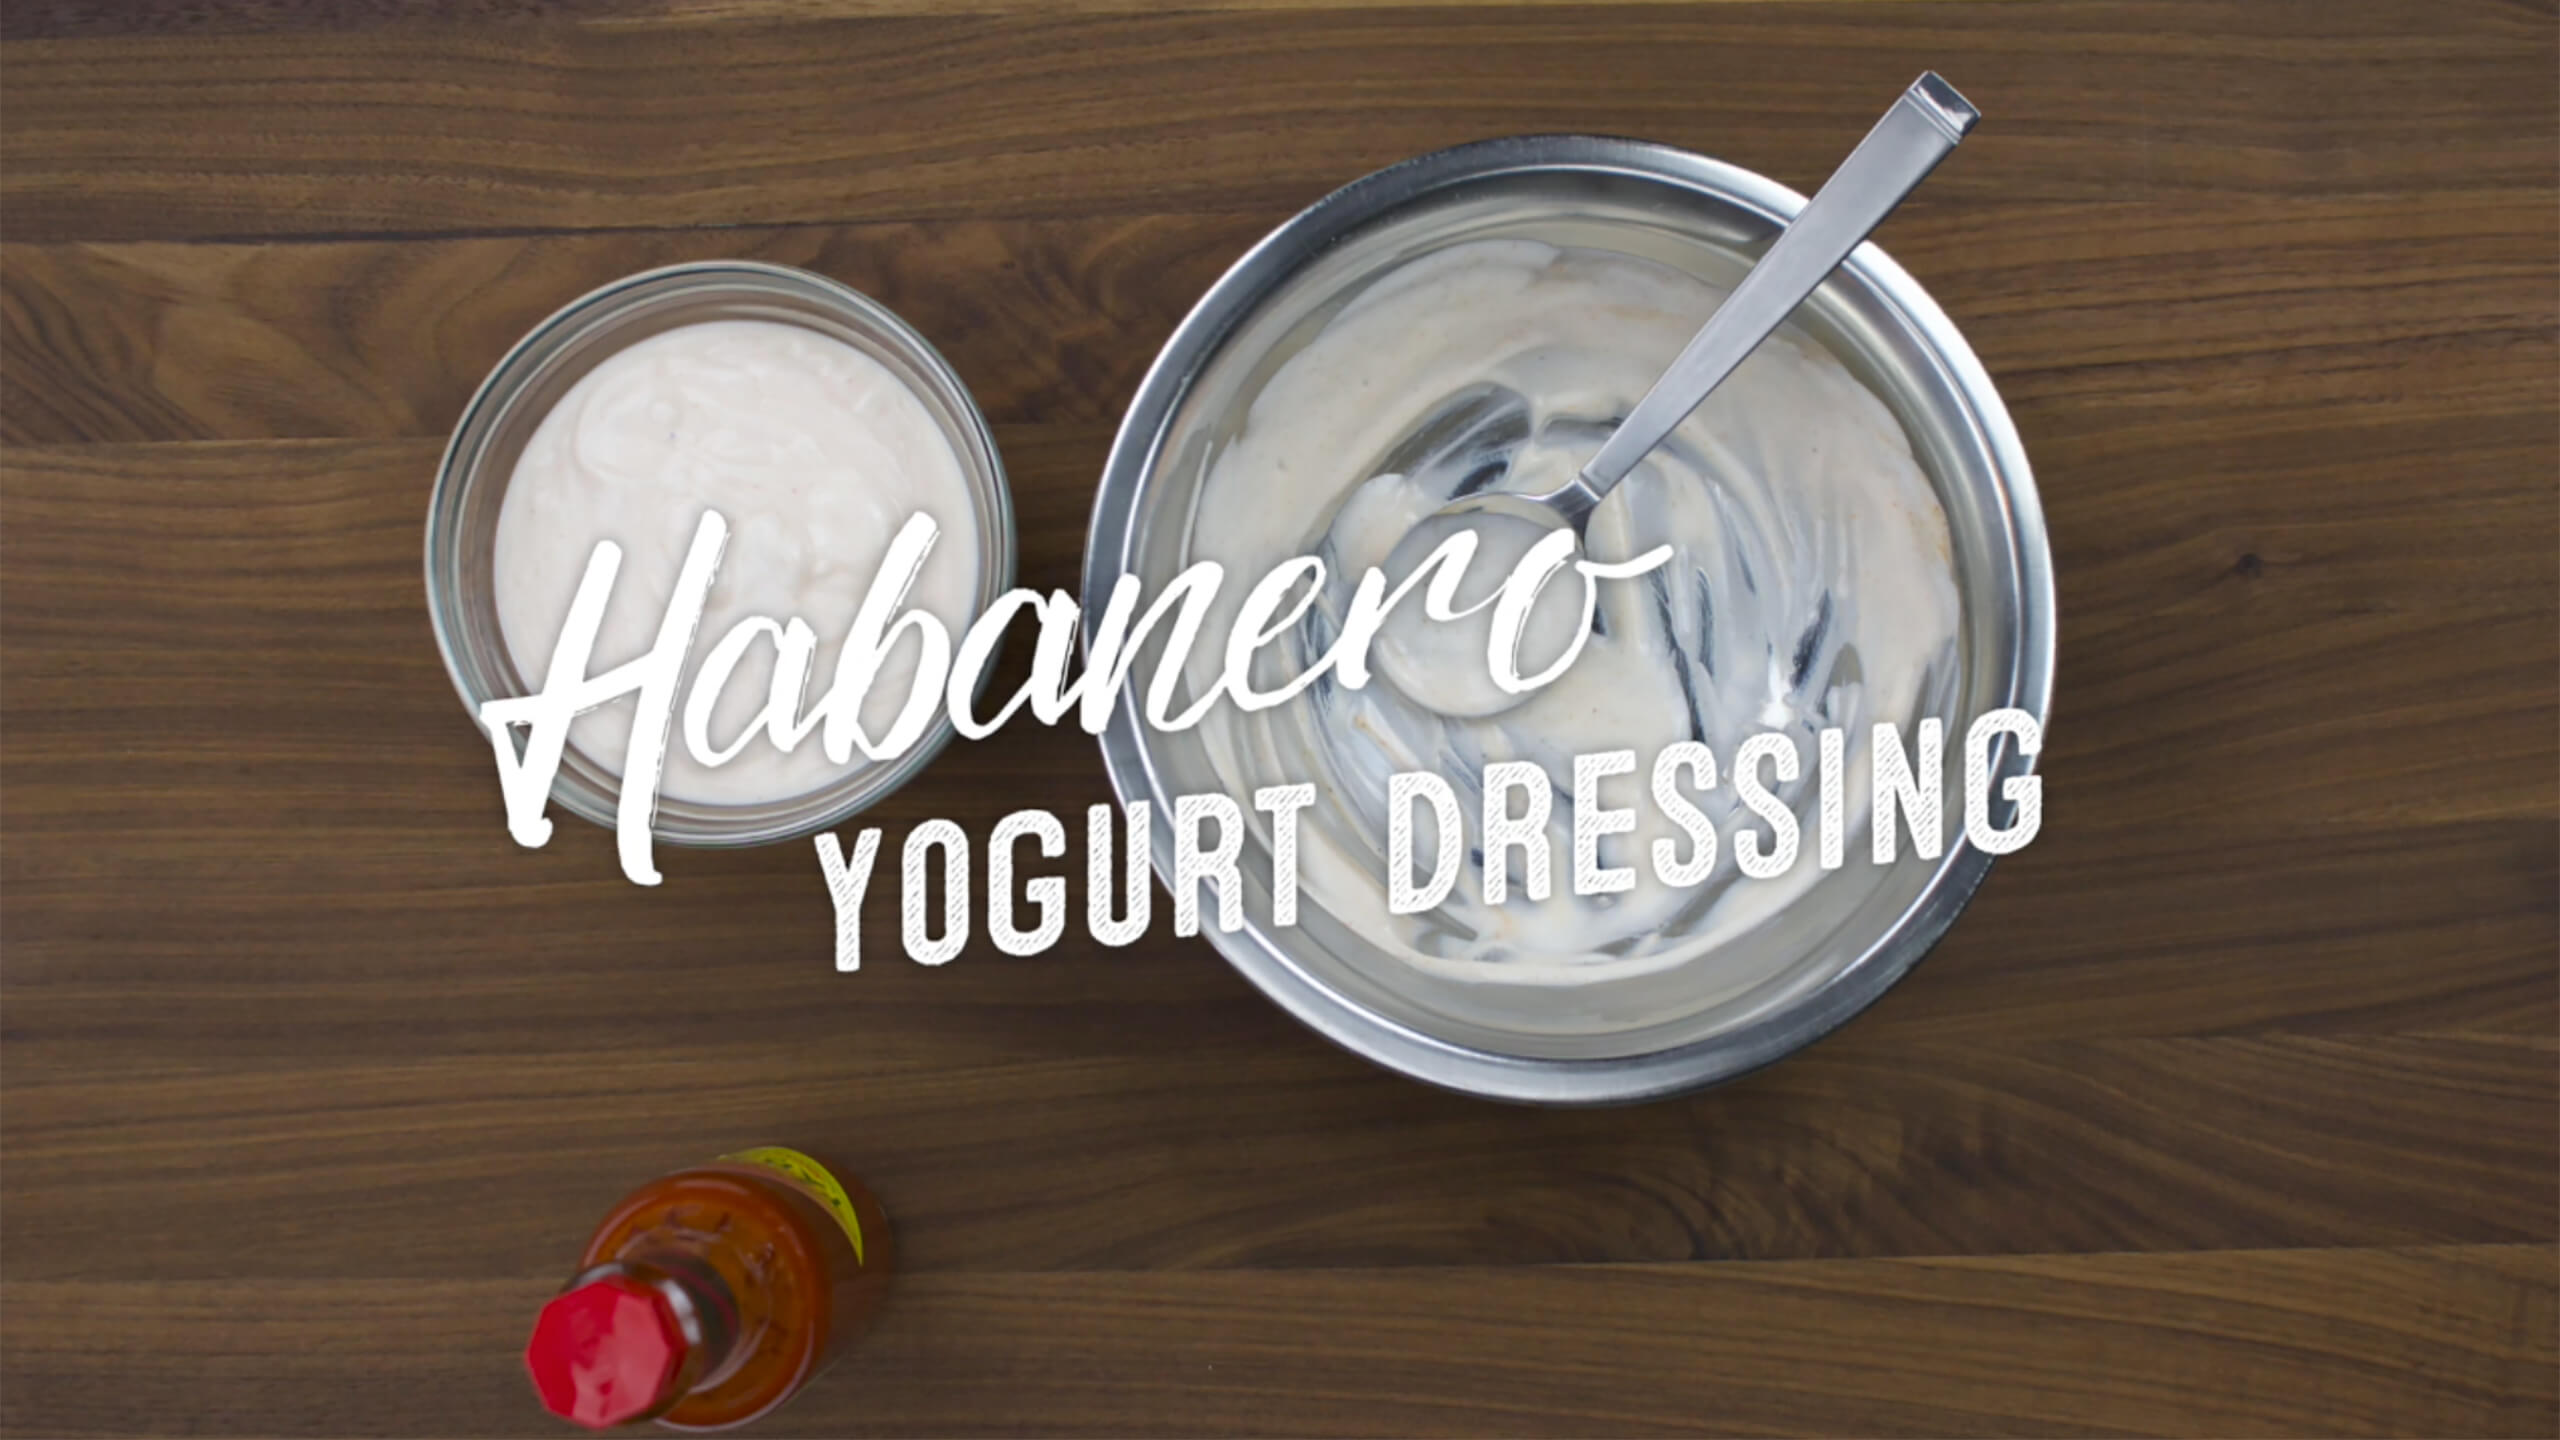 Habanero Yogurt Dressing Plus-One